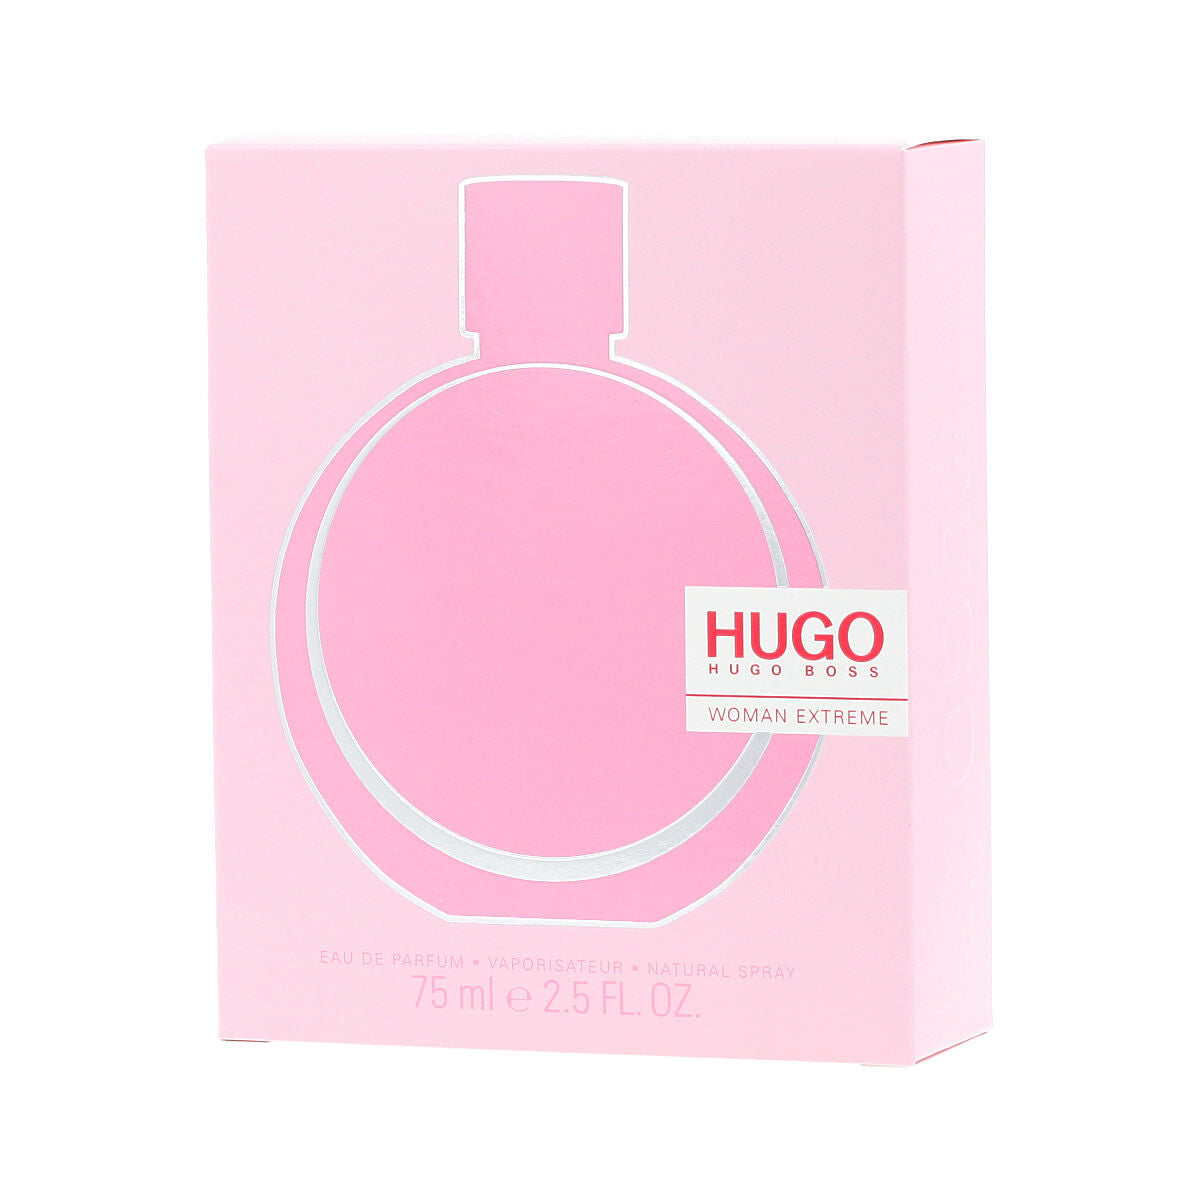 HUGO Woman Extreme - Eau de Parfum